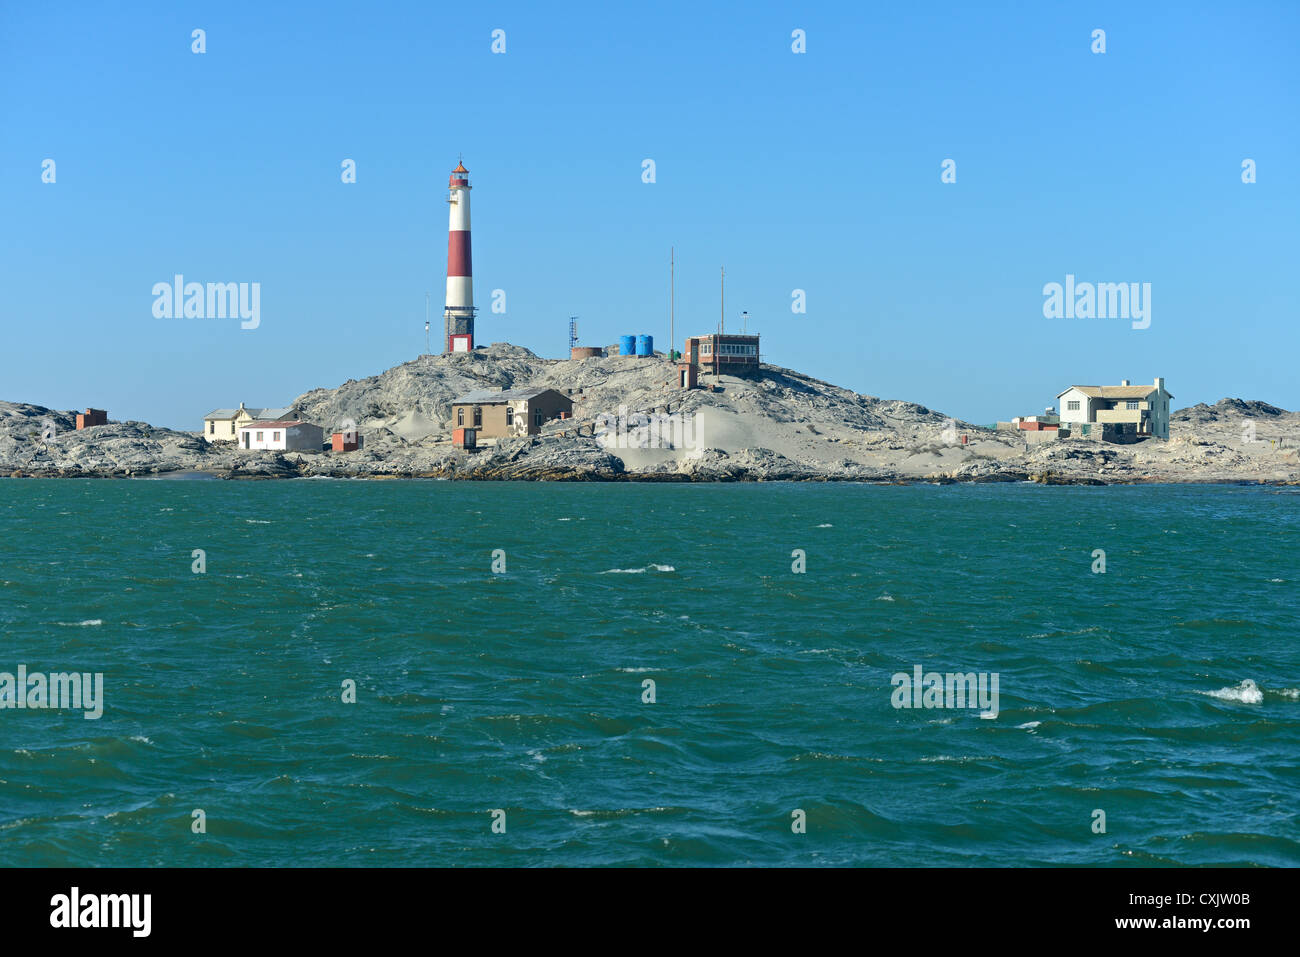 Diaz Point lighthouse, Luderitz, Namibia Stock Photo